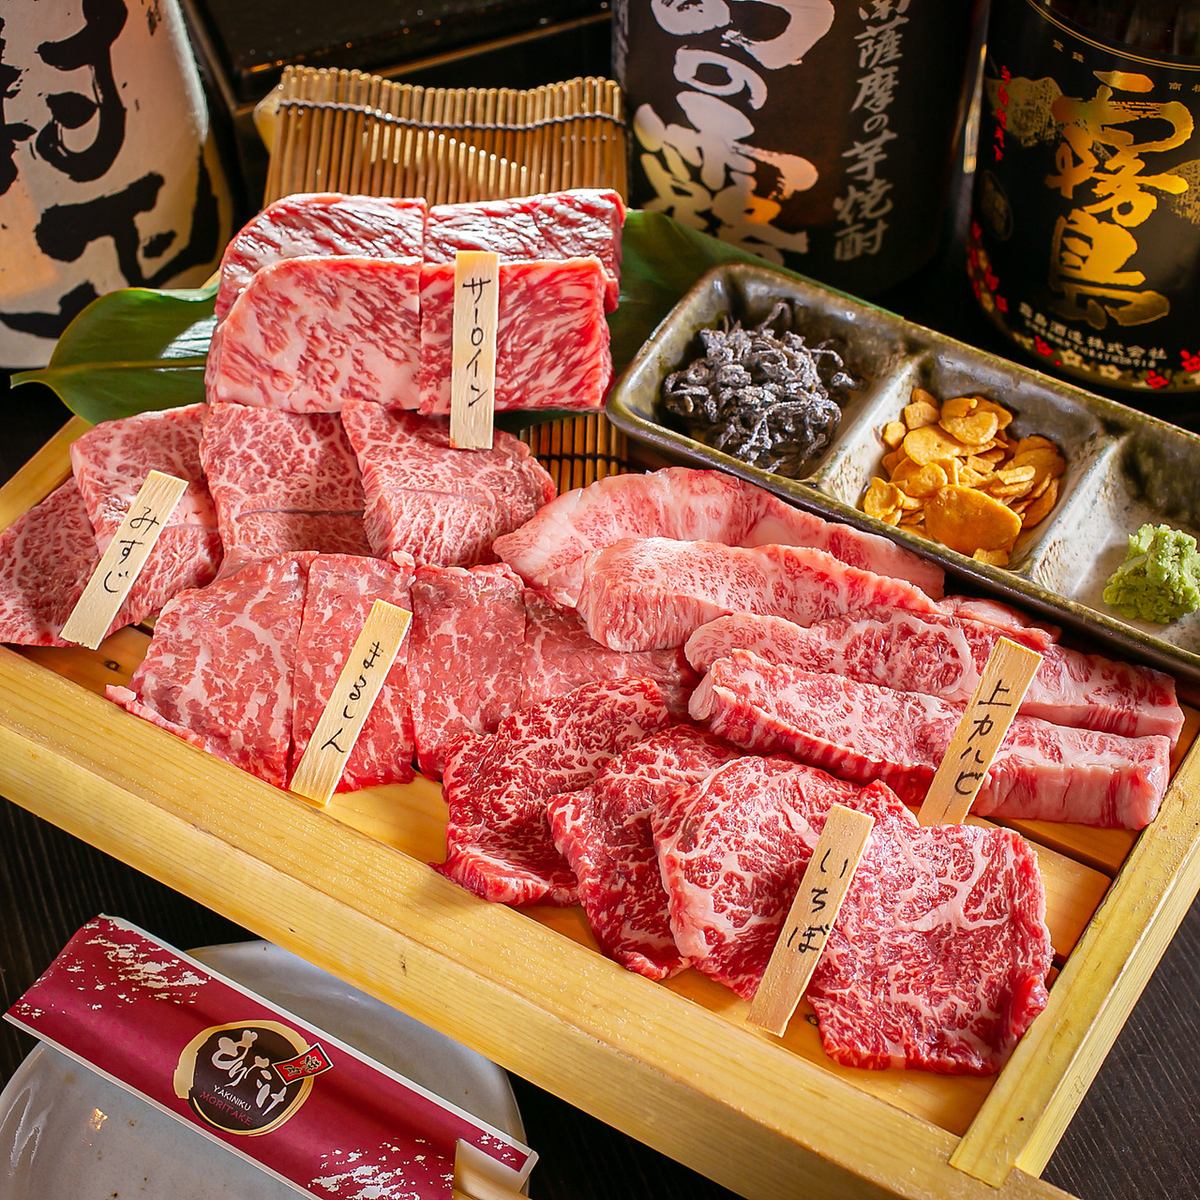 本店处理的所有日本黑毛和国产牛肉均达到“ A4级”以上！